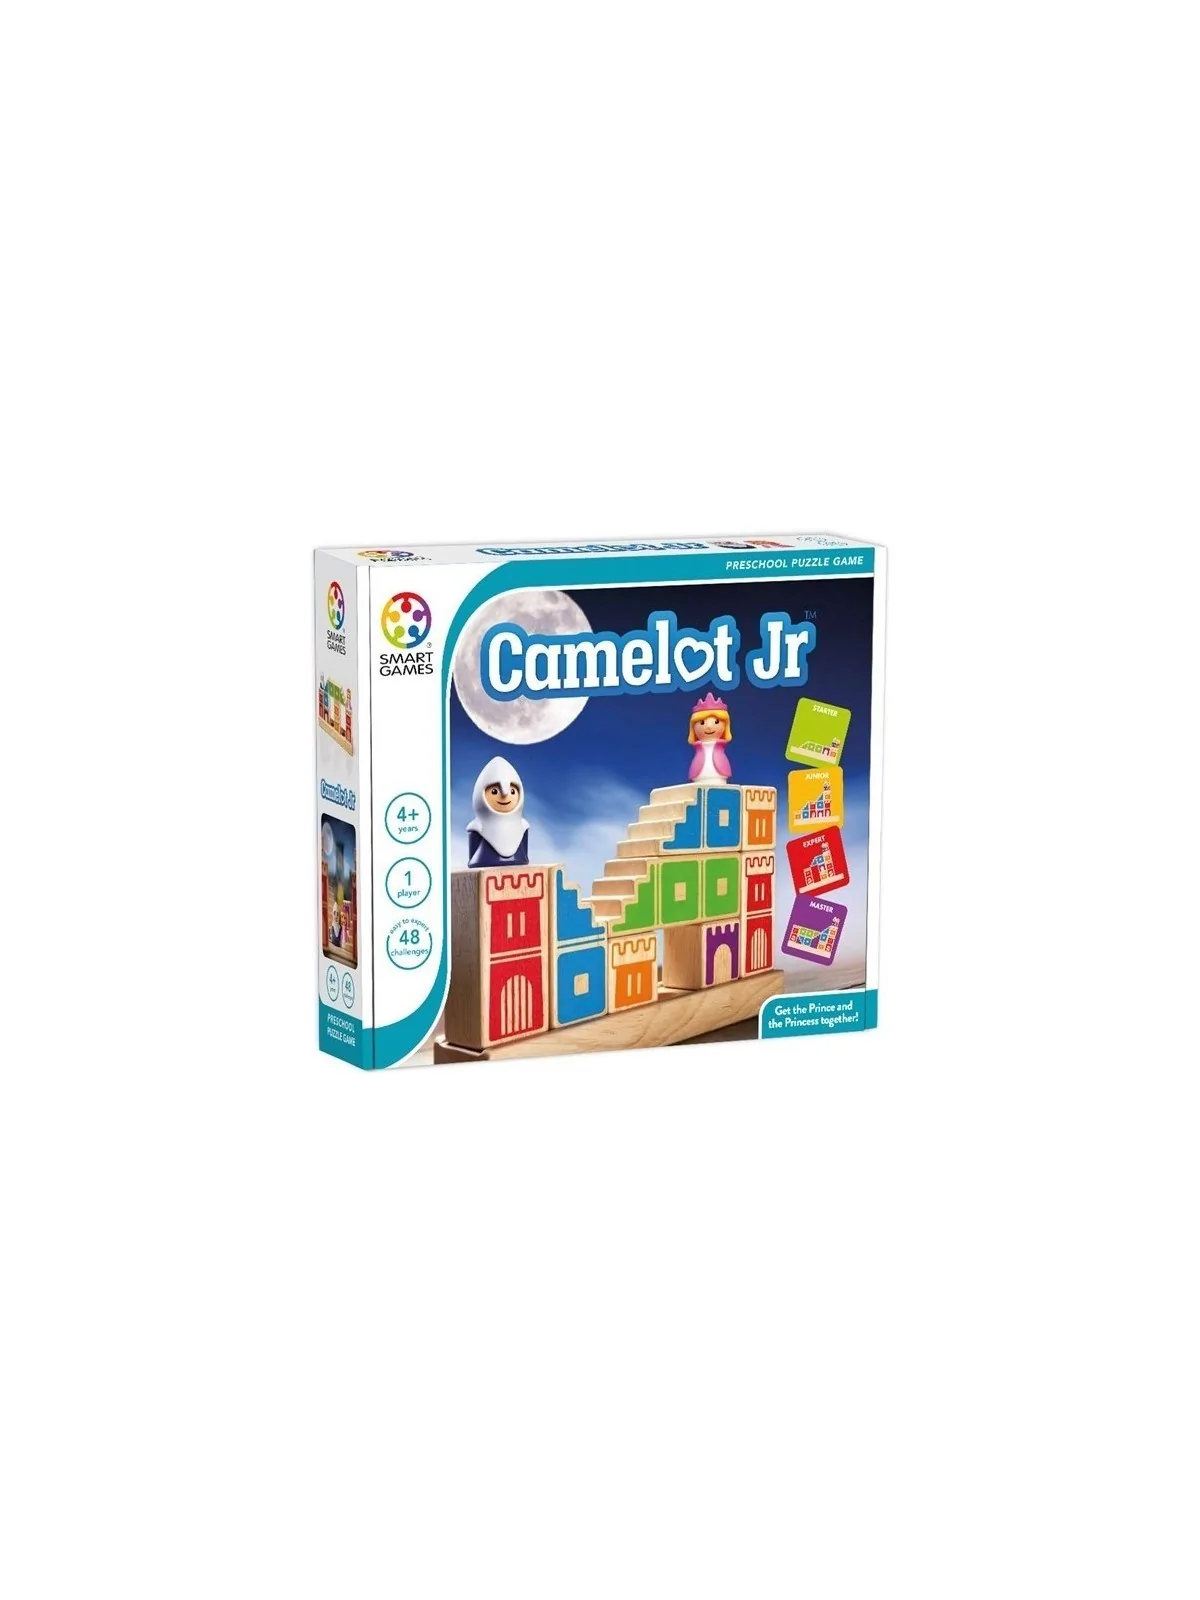 Comprar Camelot Jr barato al mejor precio 29,66 € de Ludilo